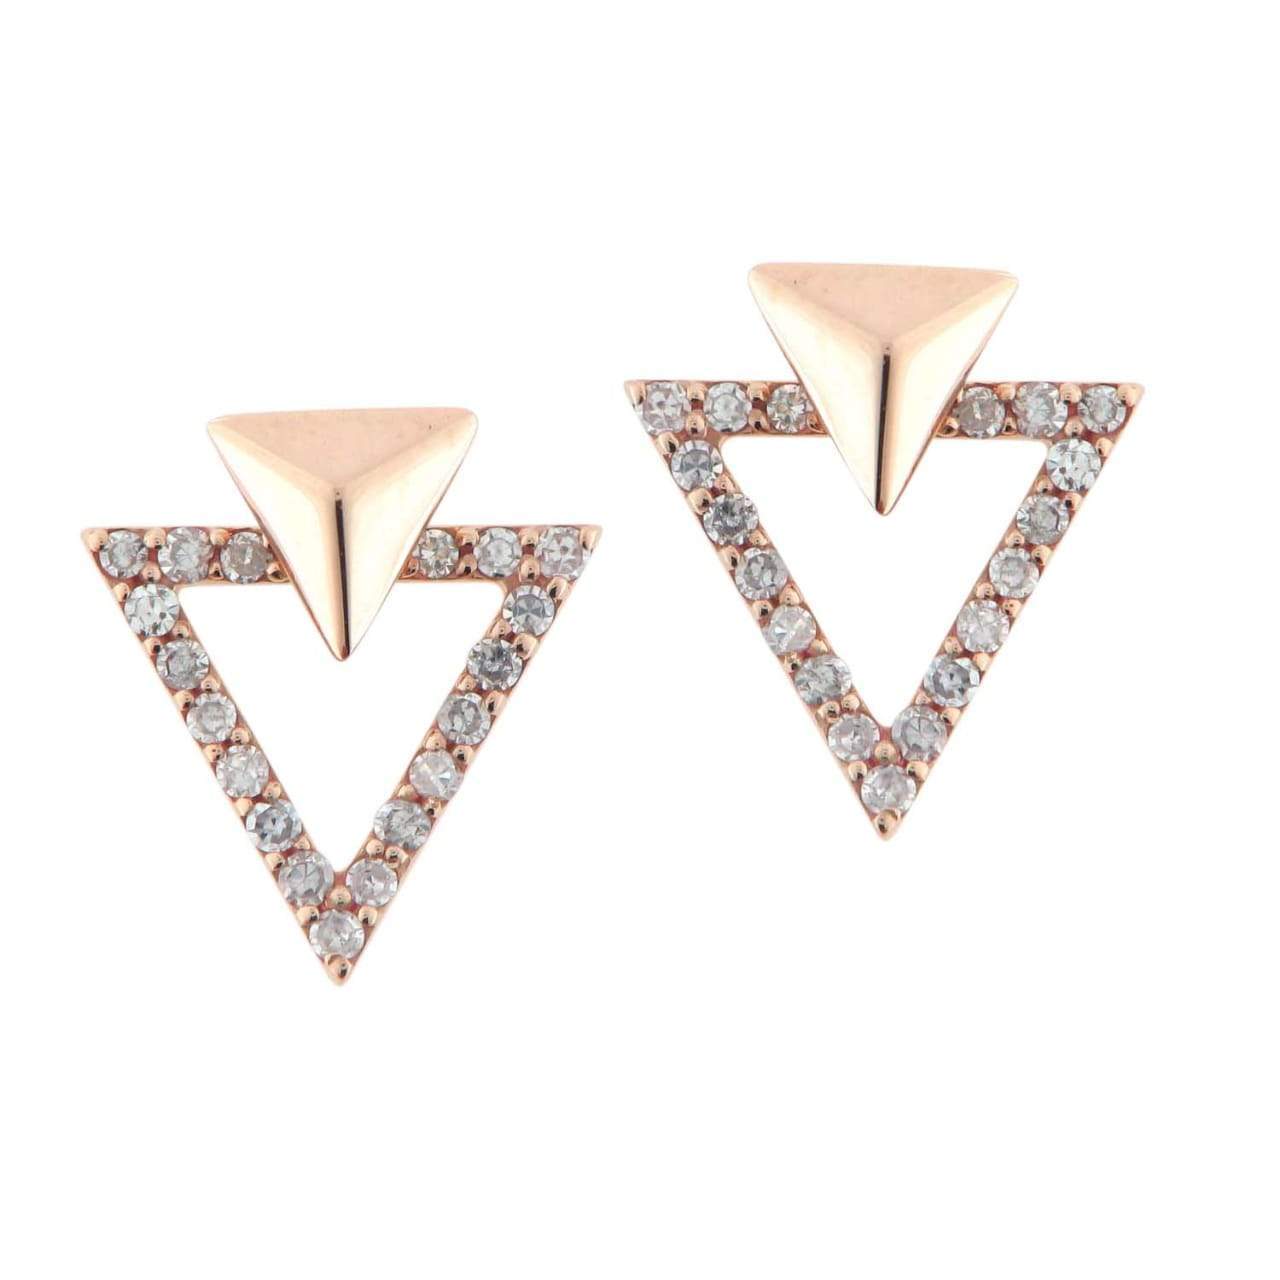 Tri-Angled Diamond Earrings-Earrings-Isle of Her-Made to Order-Isle of Her